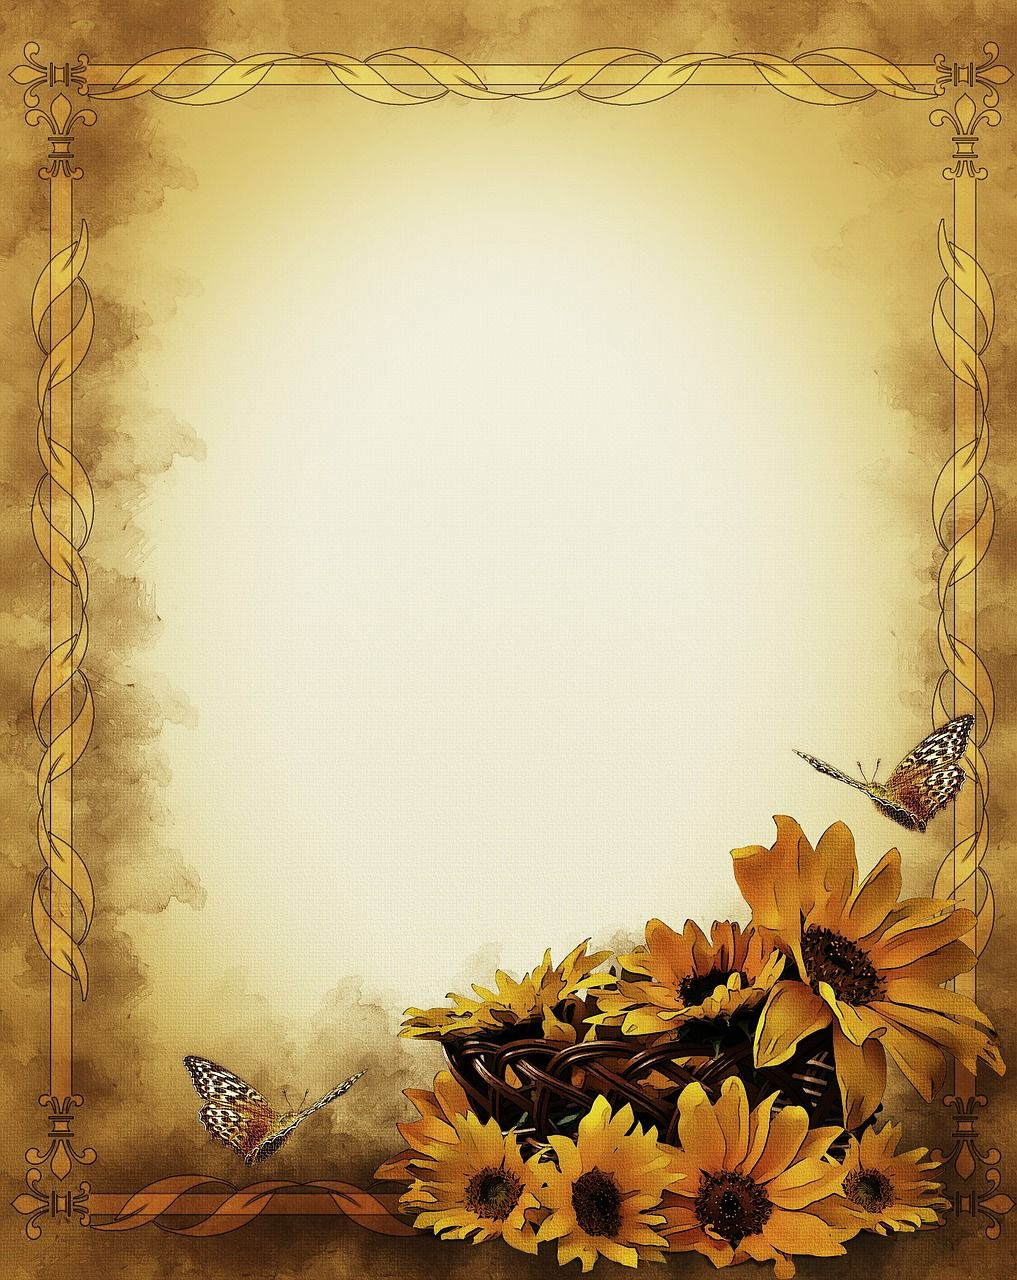 Free Image On Pixabay - Sunflowers, Still Life, Frame | Sunflowers - Free Printable Sunflower Stationery